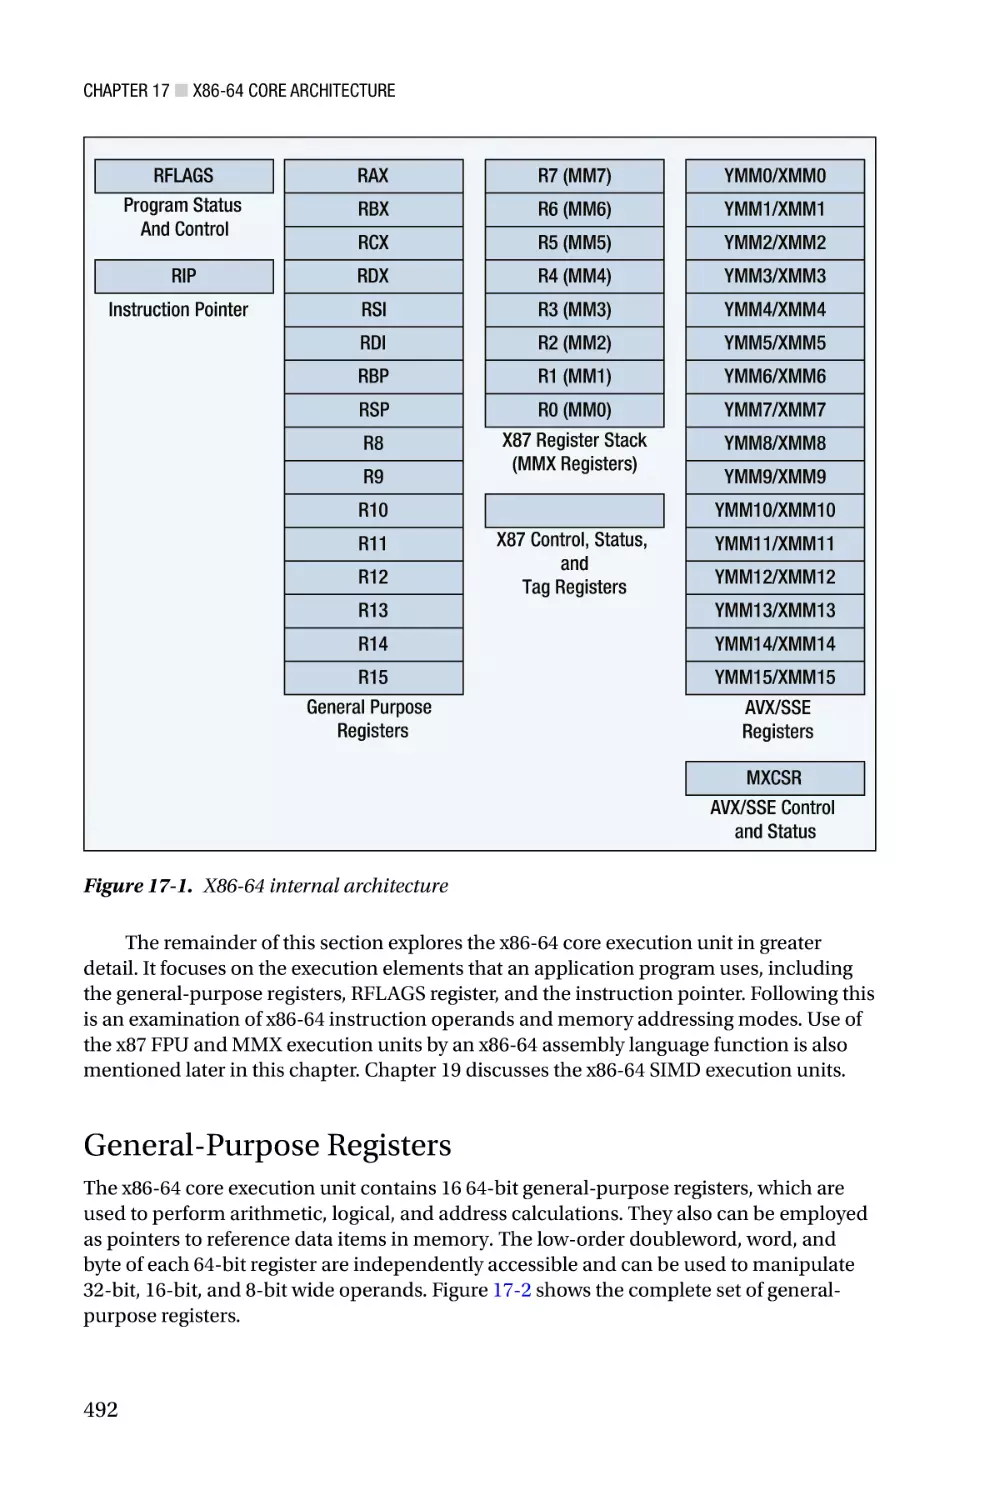 General-Purpose Registers